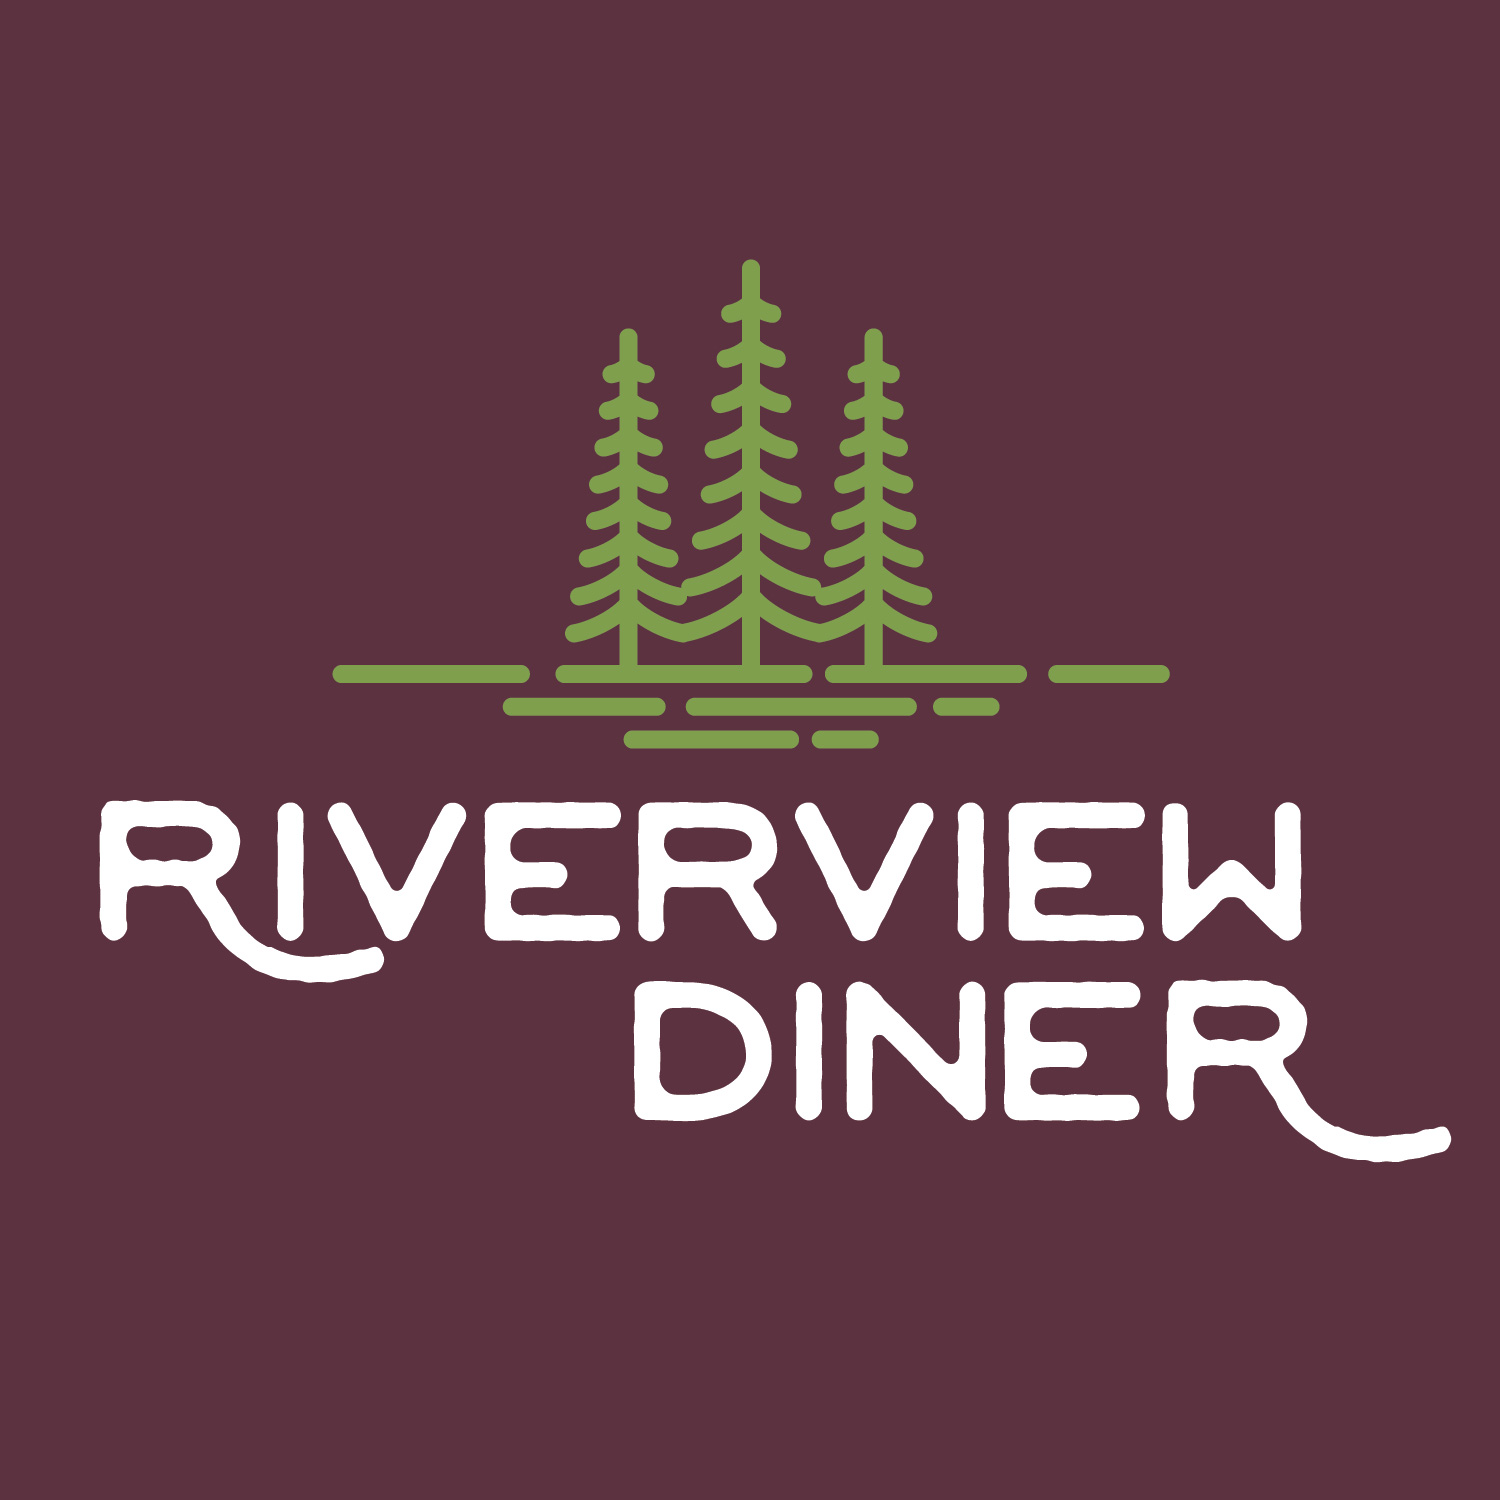 Riverview Diner